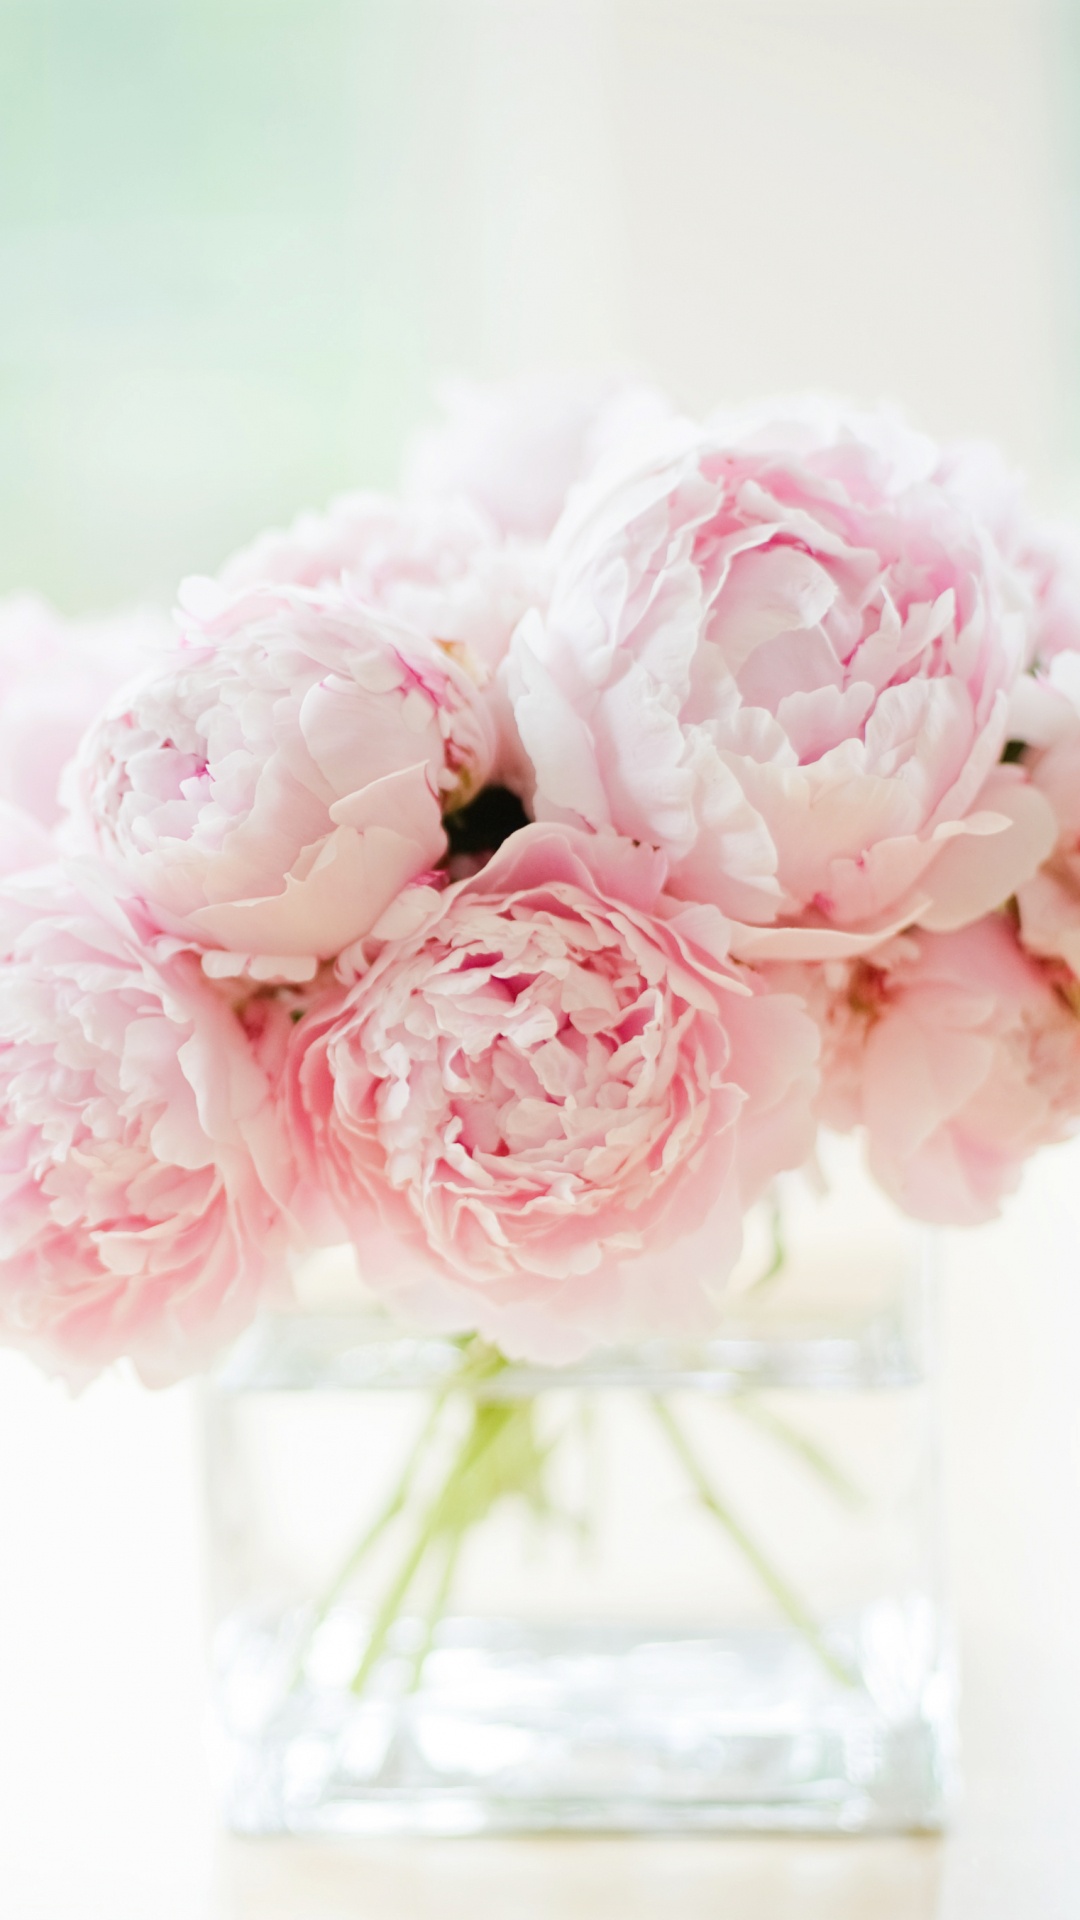 牡丹, 白色, 粉红色, 切花, 玫瑰花园 壁纸 1080x1920 允许